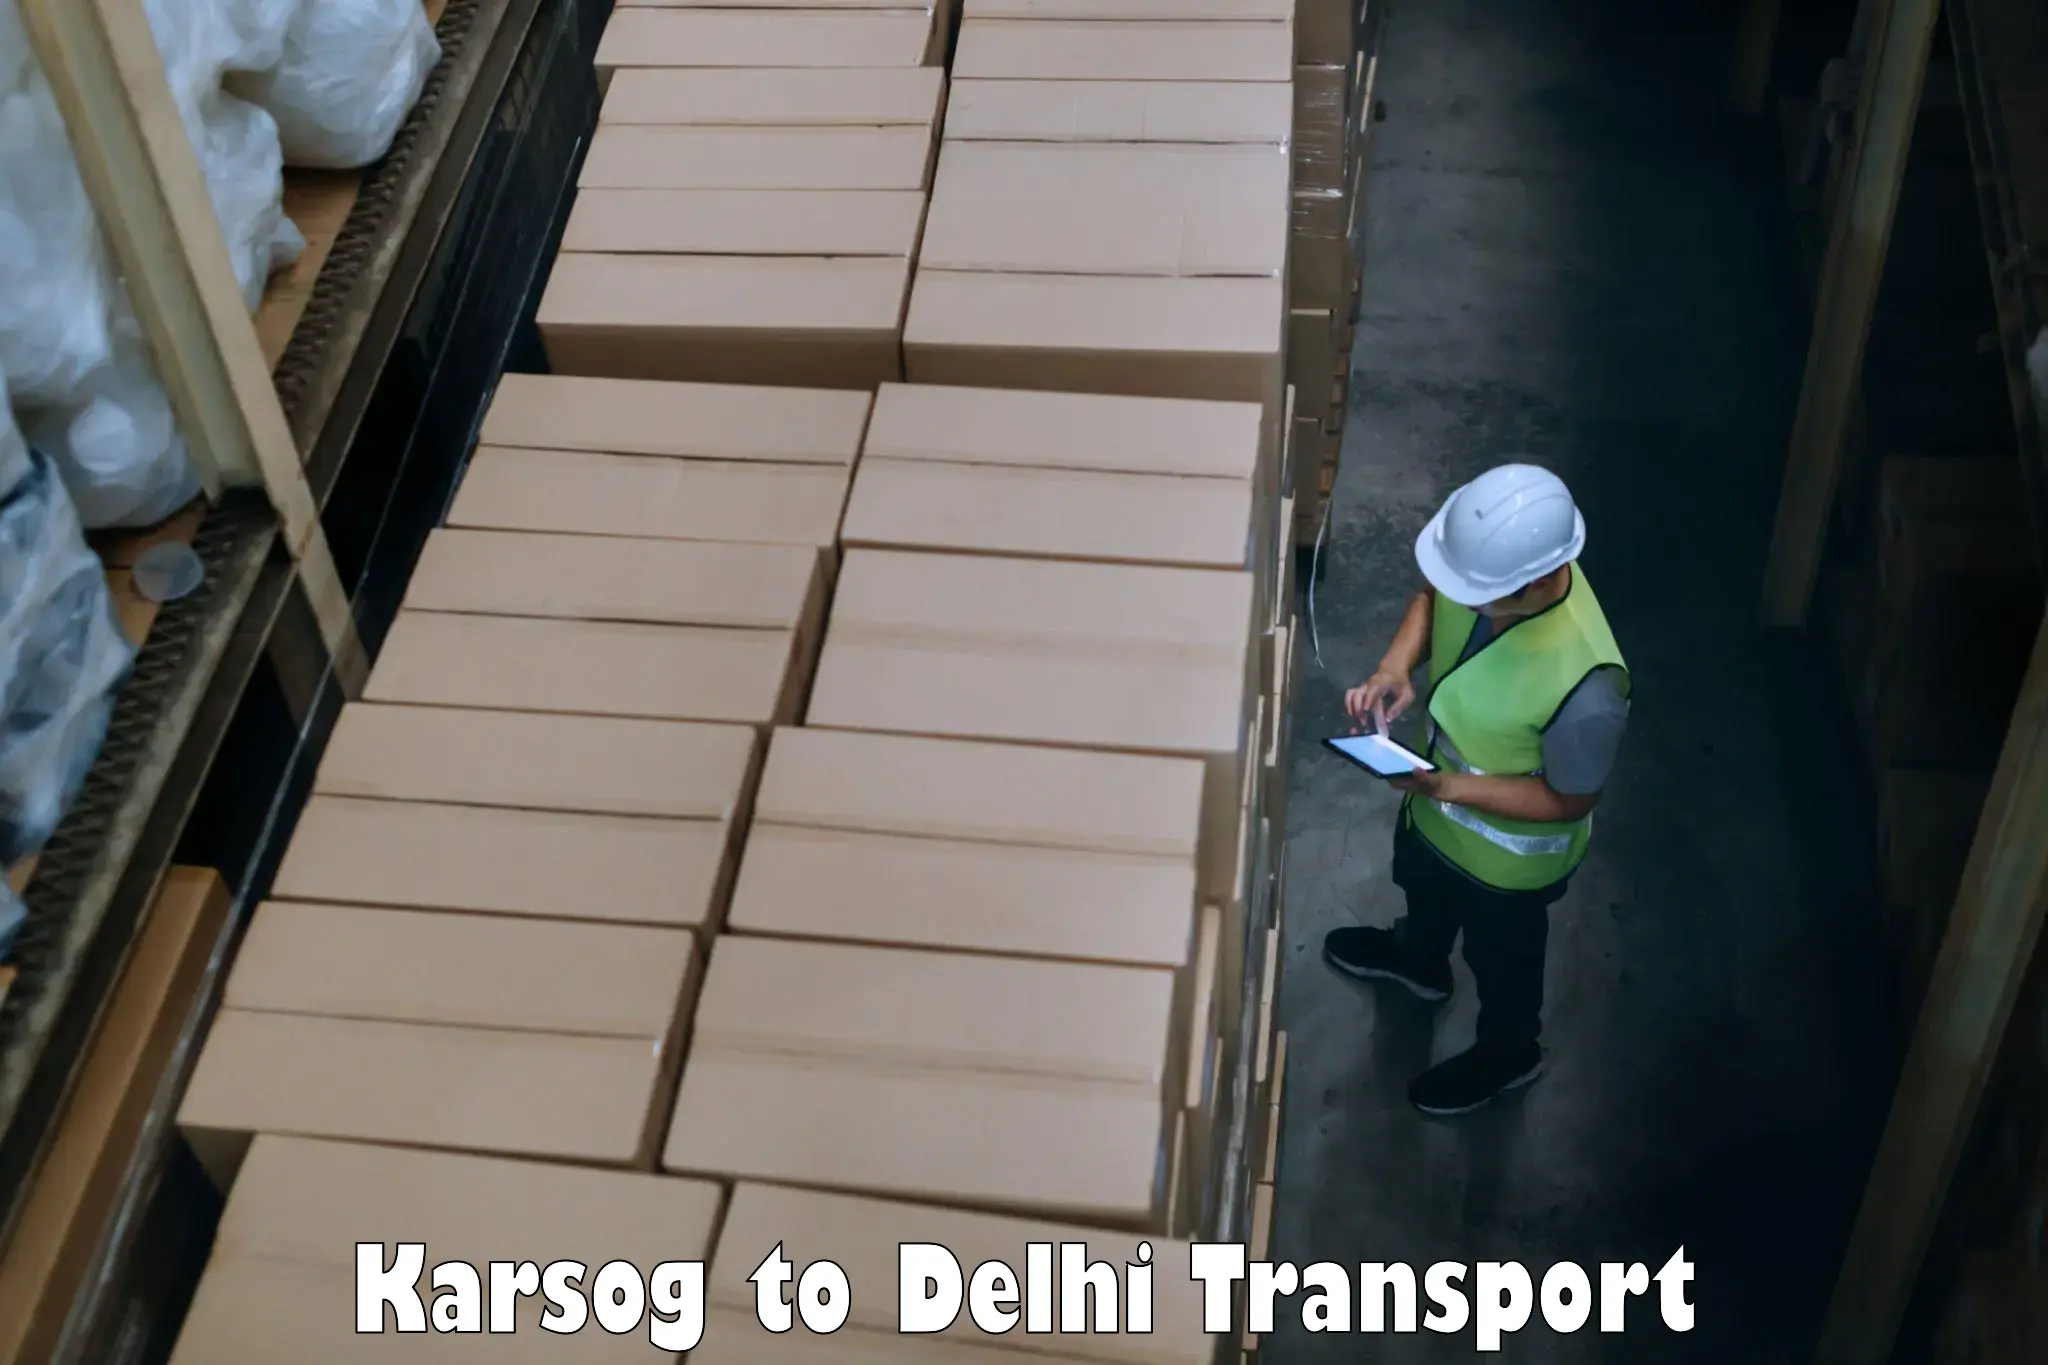 Nationwide transport services Karsog to Delhi